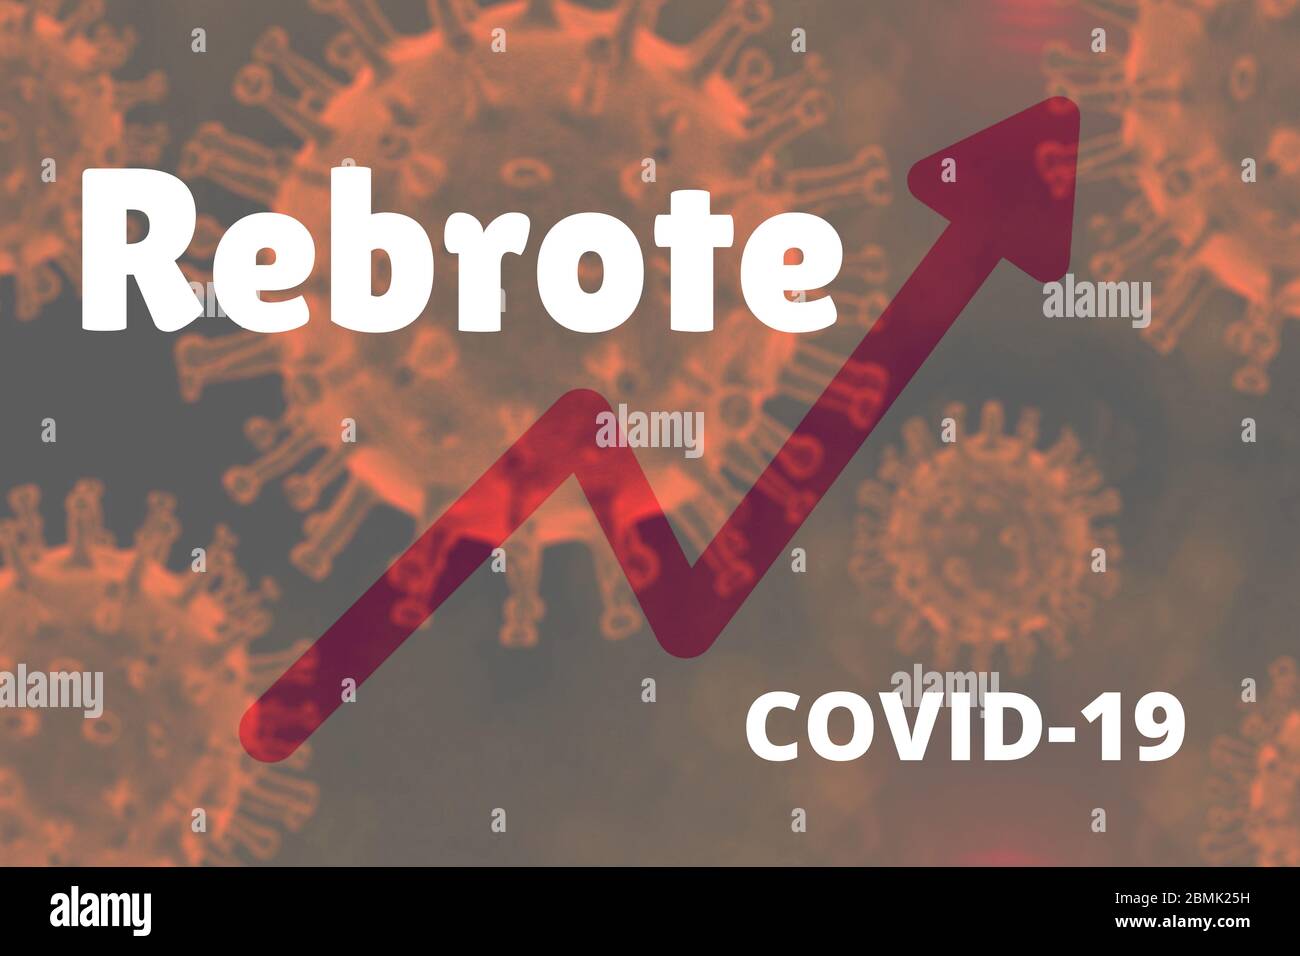 Ilustración para mostrar un rebrote de Covid-19. Ilustración con una curva ascendente en un fondo de coronavirus con el texto de Rebrote. Flecha roja Stock Photo